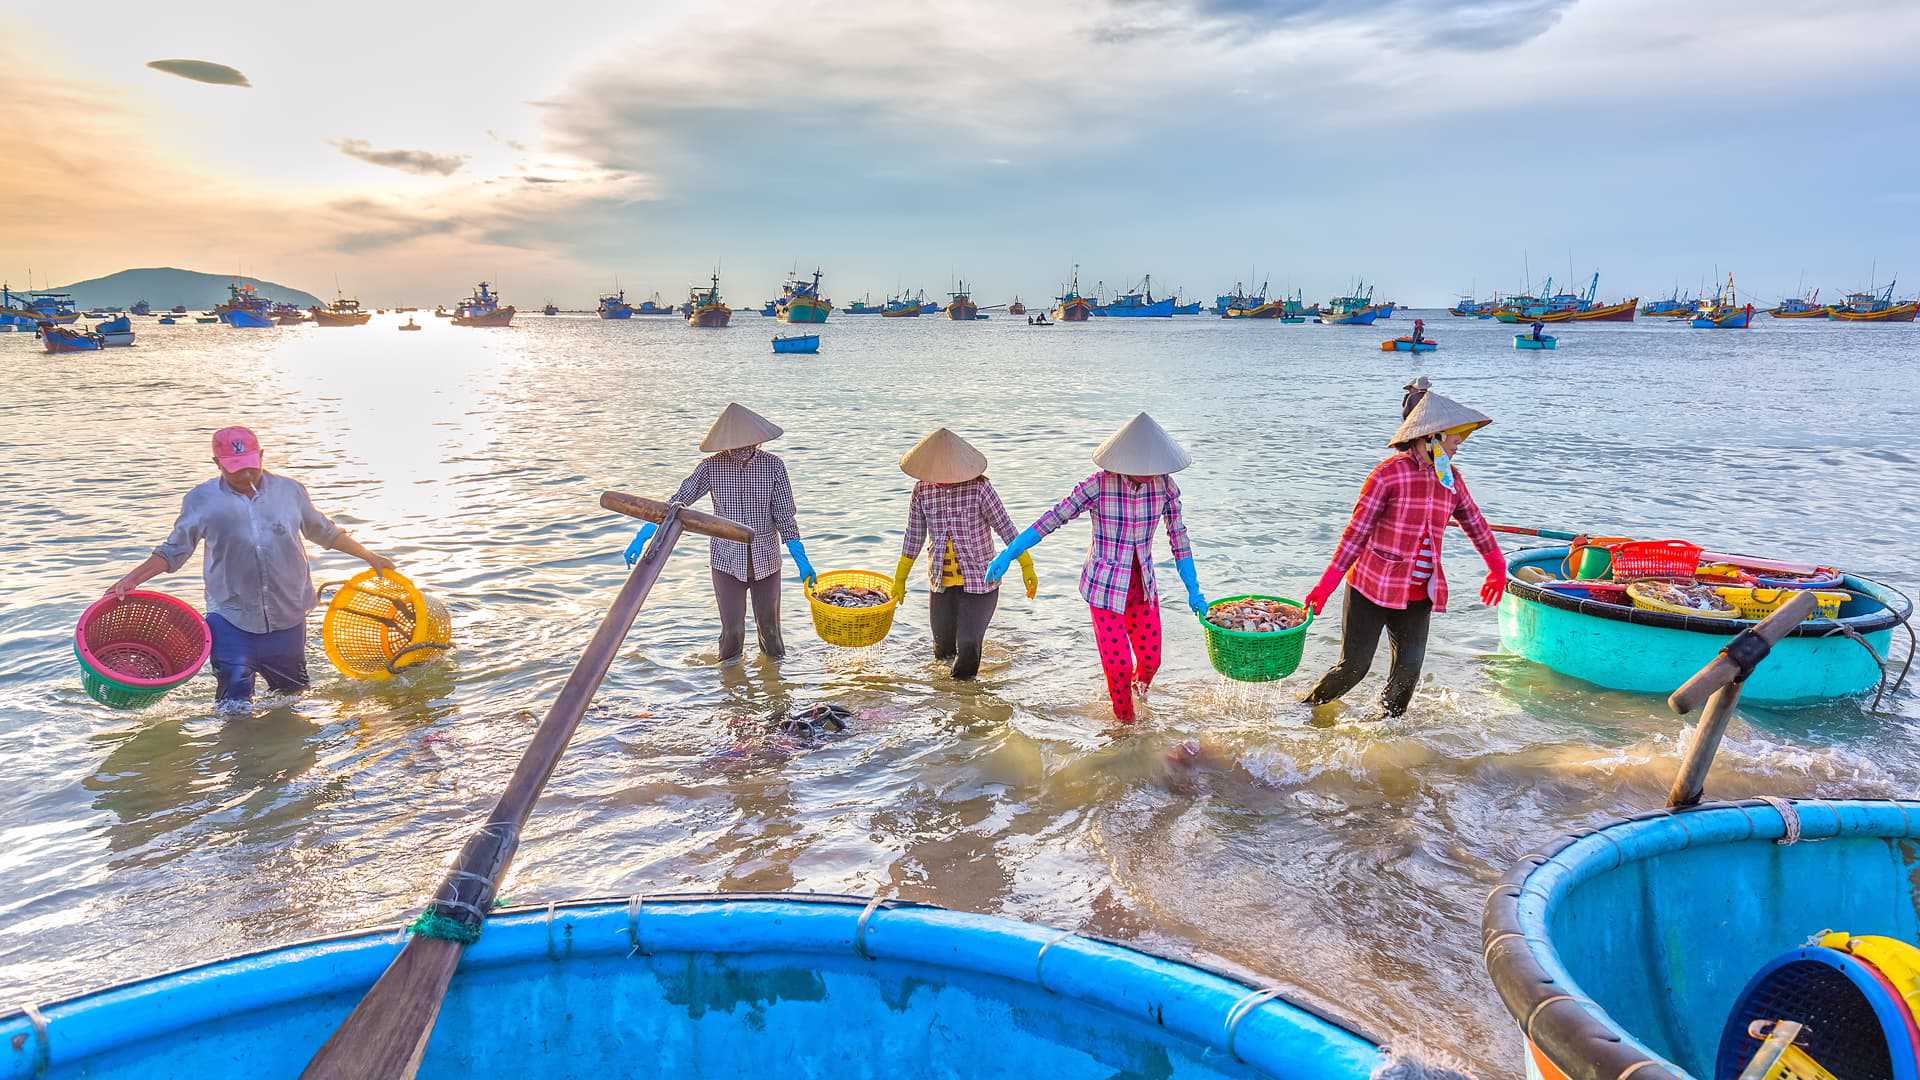 Mũi Né - Bình Thuận - Top 12 bãi biển đẹp nhất Việt Nam được đông đảo du khách ghé thăm